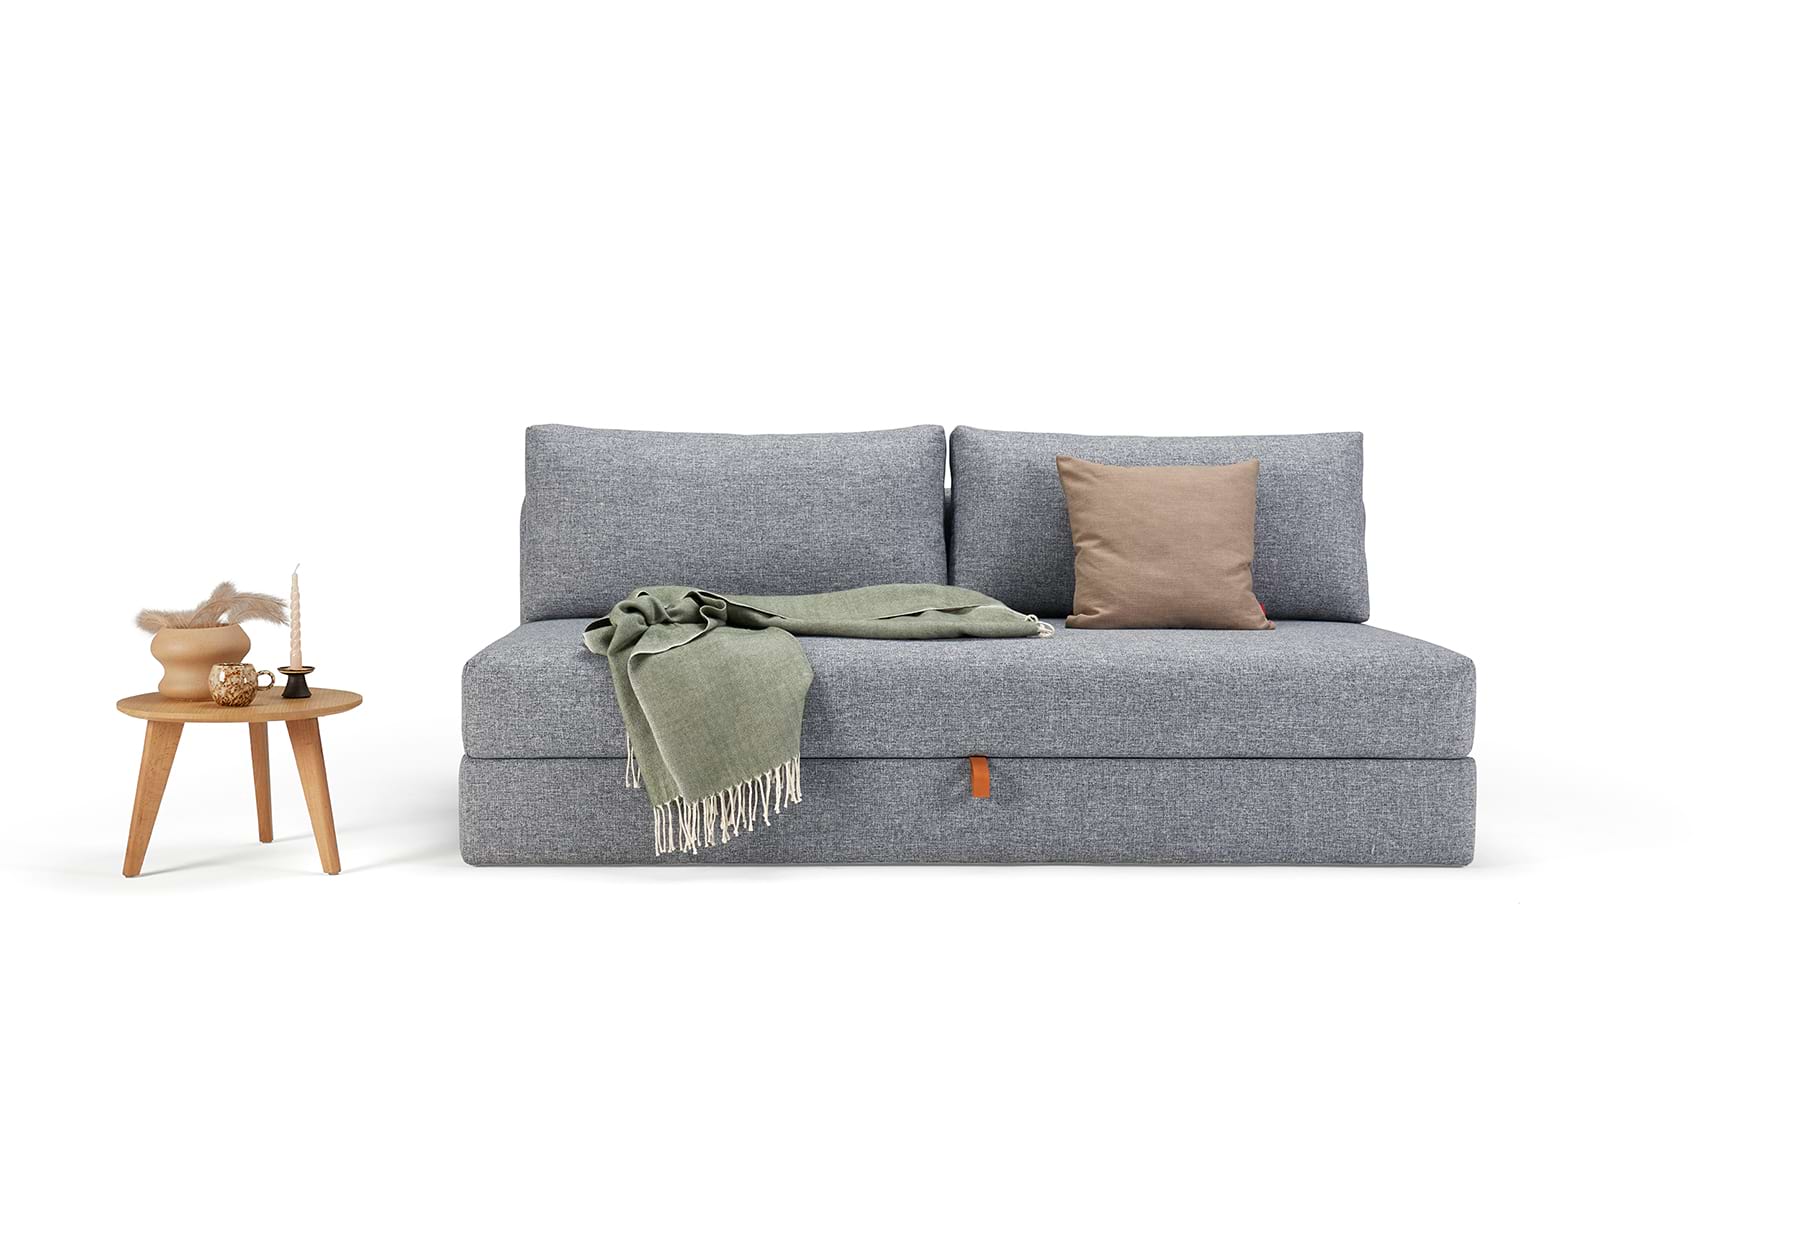 Kissen, Dekoration für Zuhause, Couch, Mobiliar